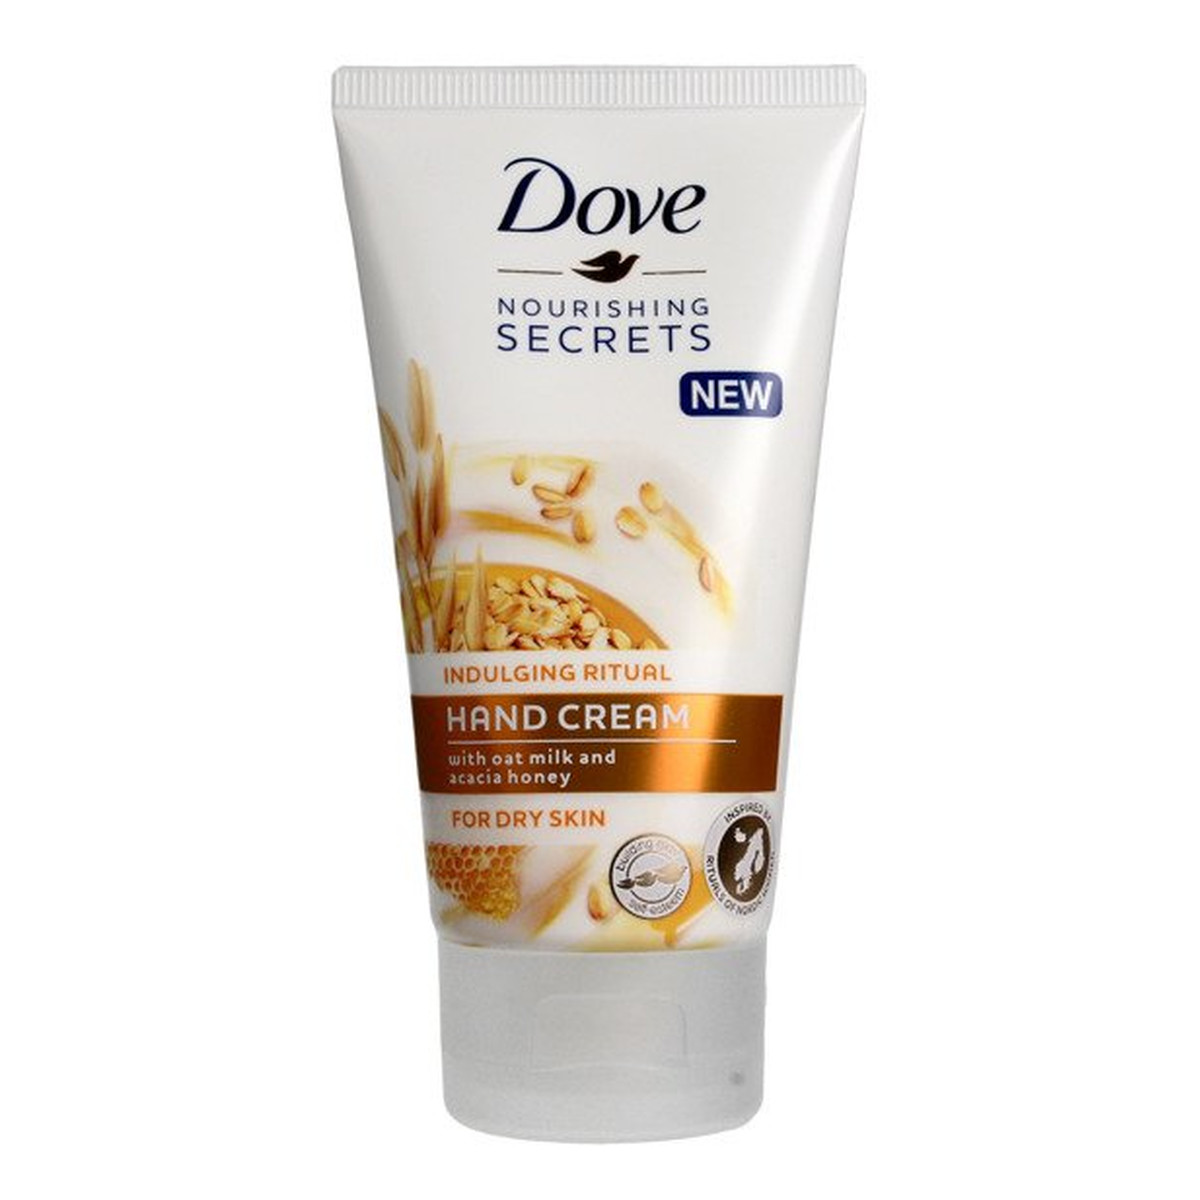 Dove Nourishing Secrets Indulging Ritual odżywiająco-regenerujący krem do rąk Oat Milk & Honey 75ml